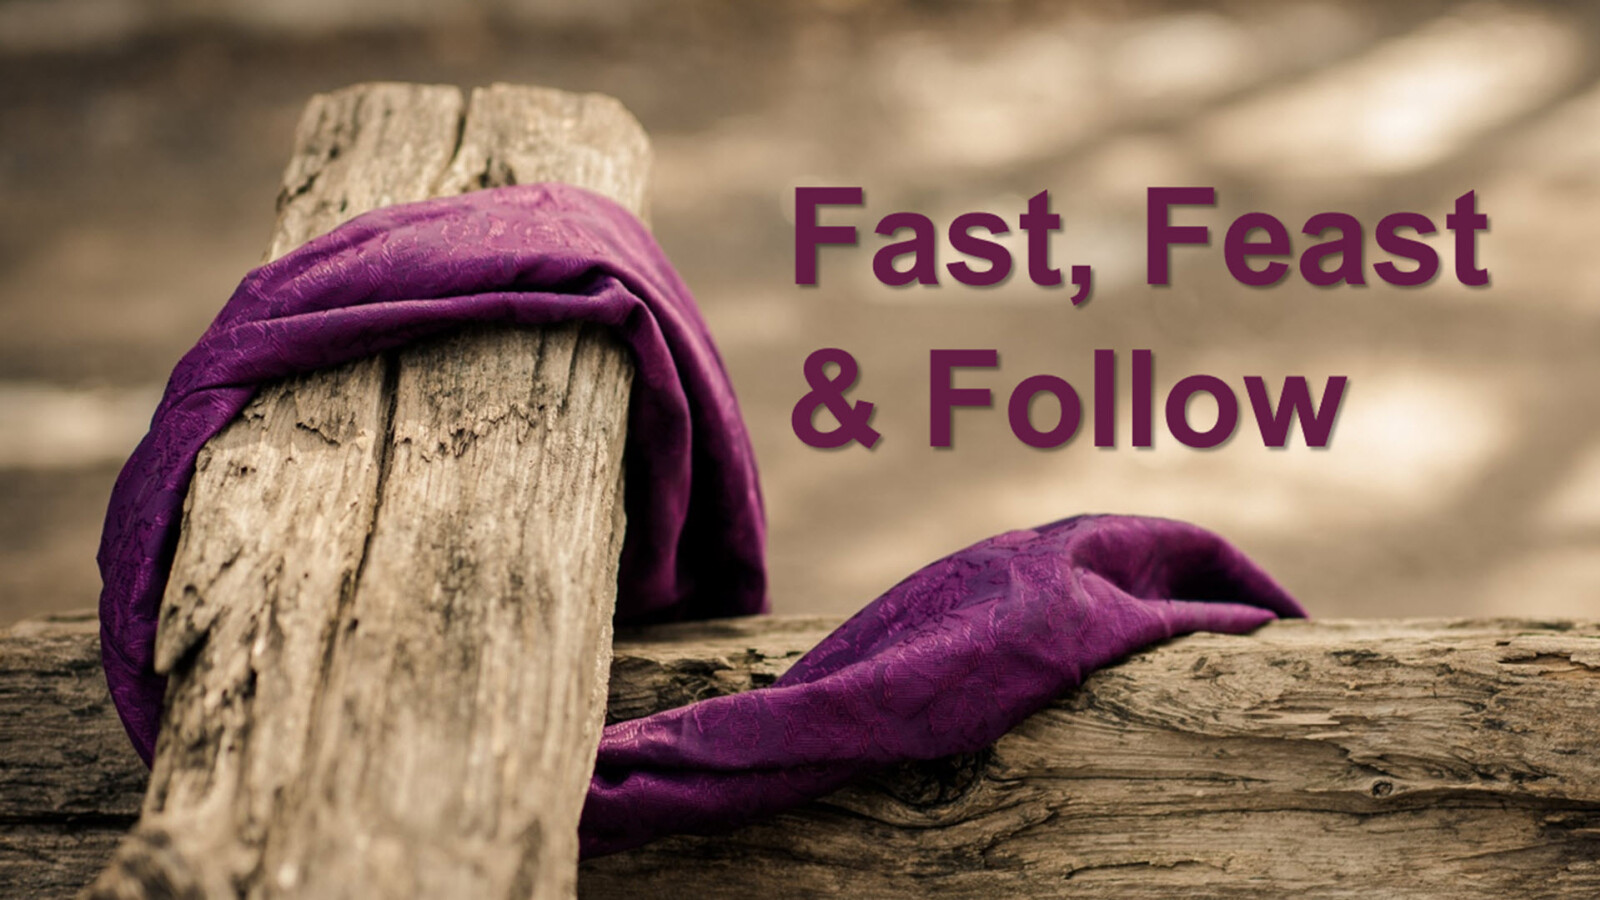 Fast, Feast & Follow